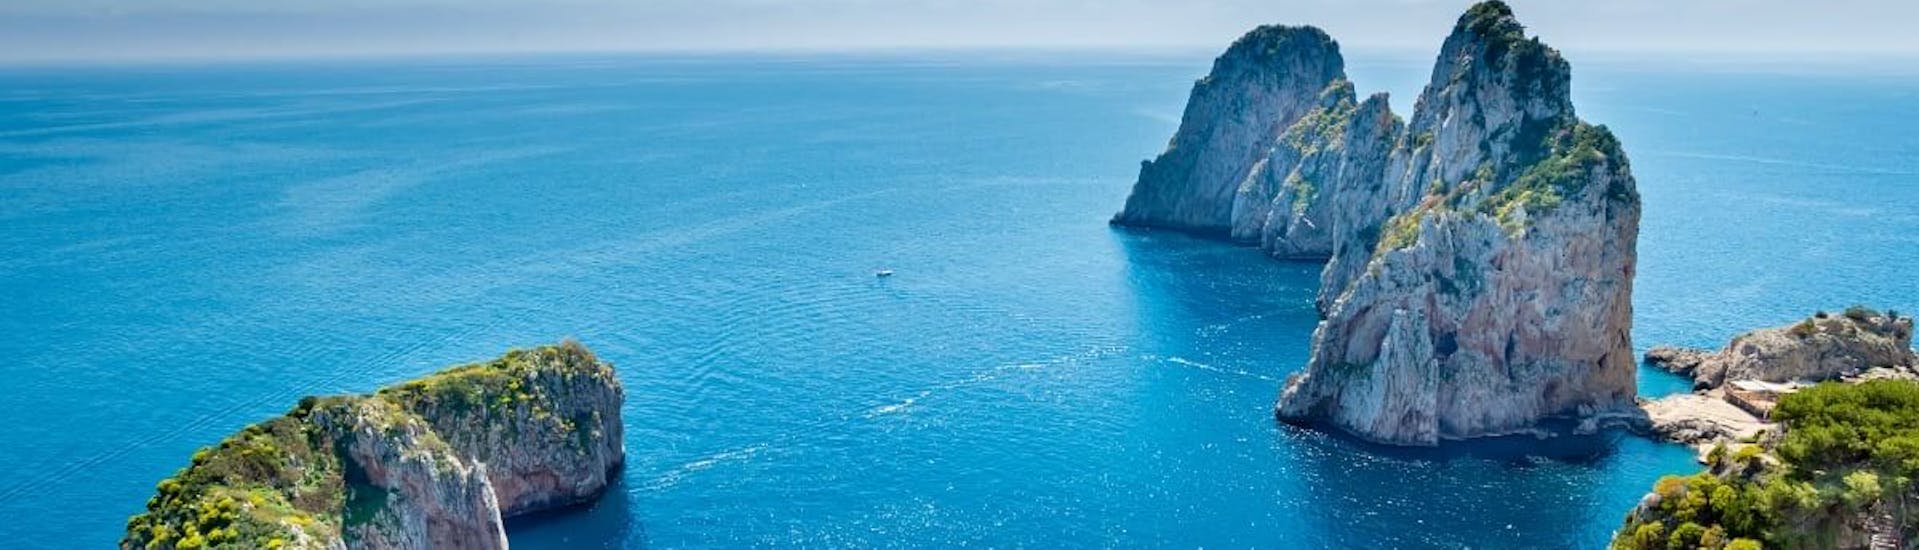 Het kristalheldere water van Sorrento waar je de boottocht van Pozzuoli naar Capri en Sorrento met lunch kunt maken.